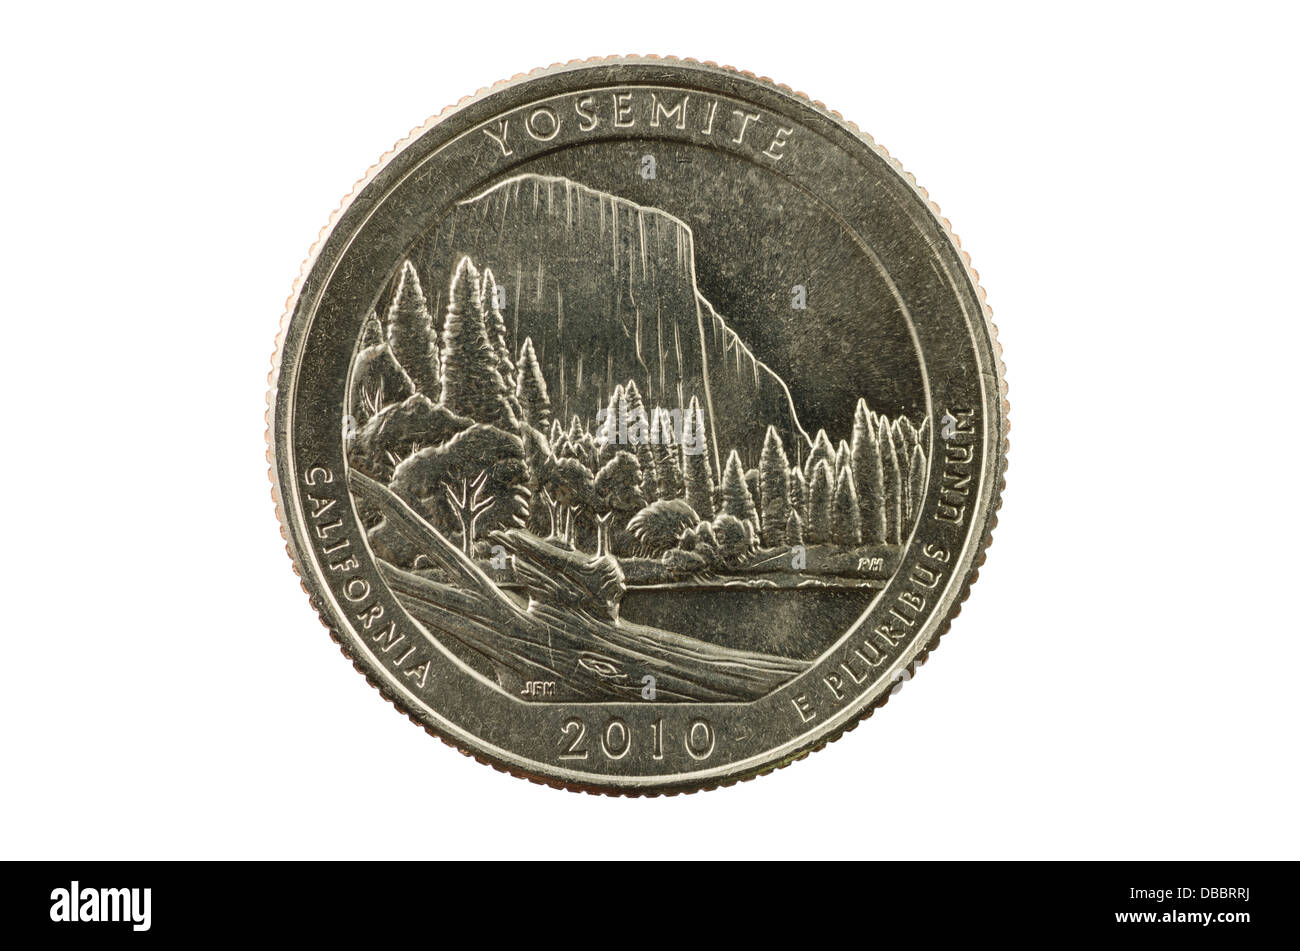 Yosemite California Quartal Gedenkmünze isoliert auf weißem Hintergrund Stockfoto